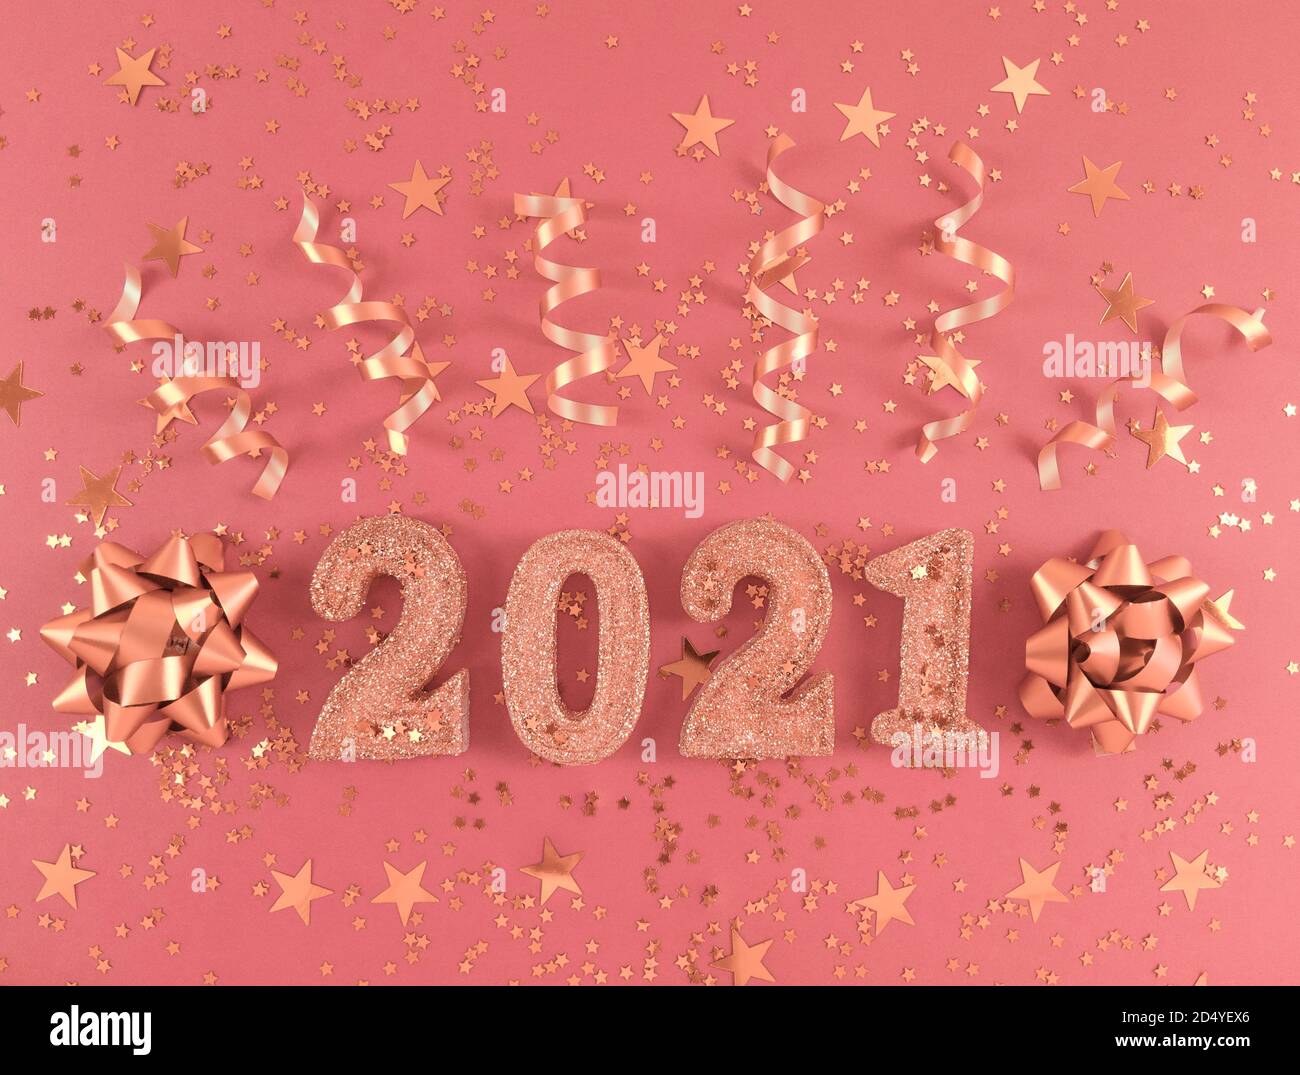 Grußkarte des neuen Jahres 2021. Glitzernde Figuren, Sterne, Schleifen und Bänder auf hellrosa Hintergrund. Stockfoto